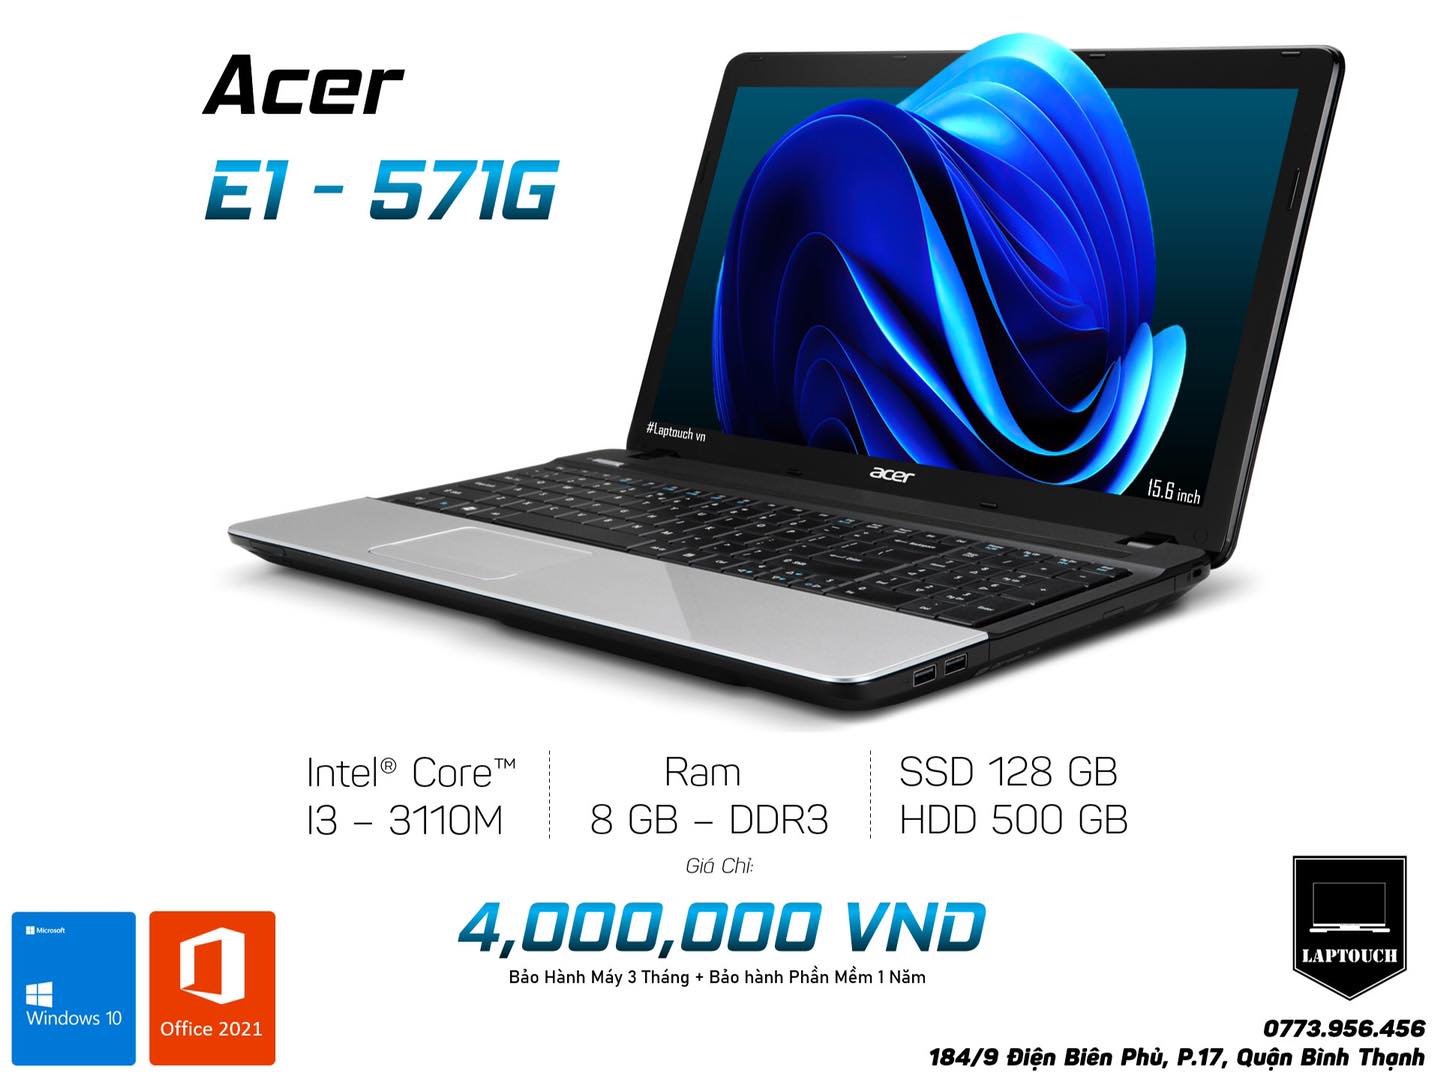  Acer E1 - 571G